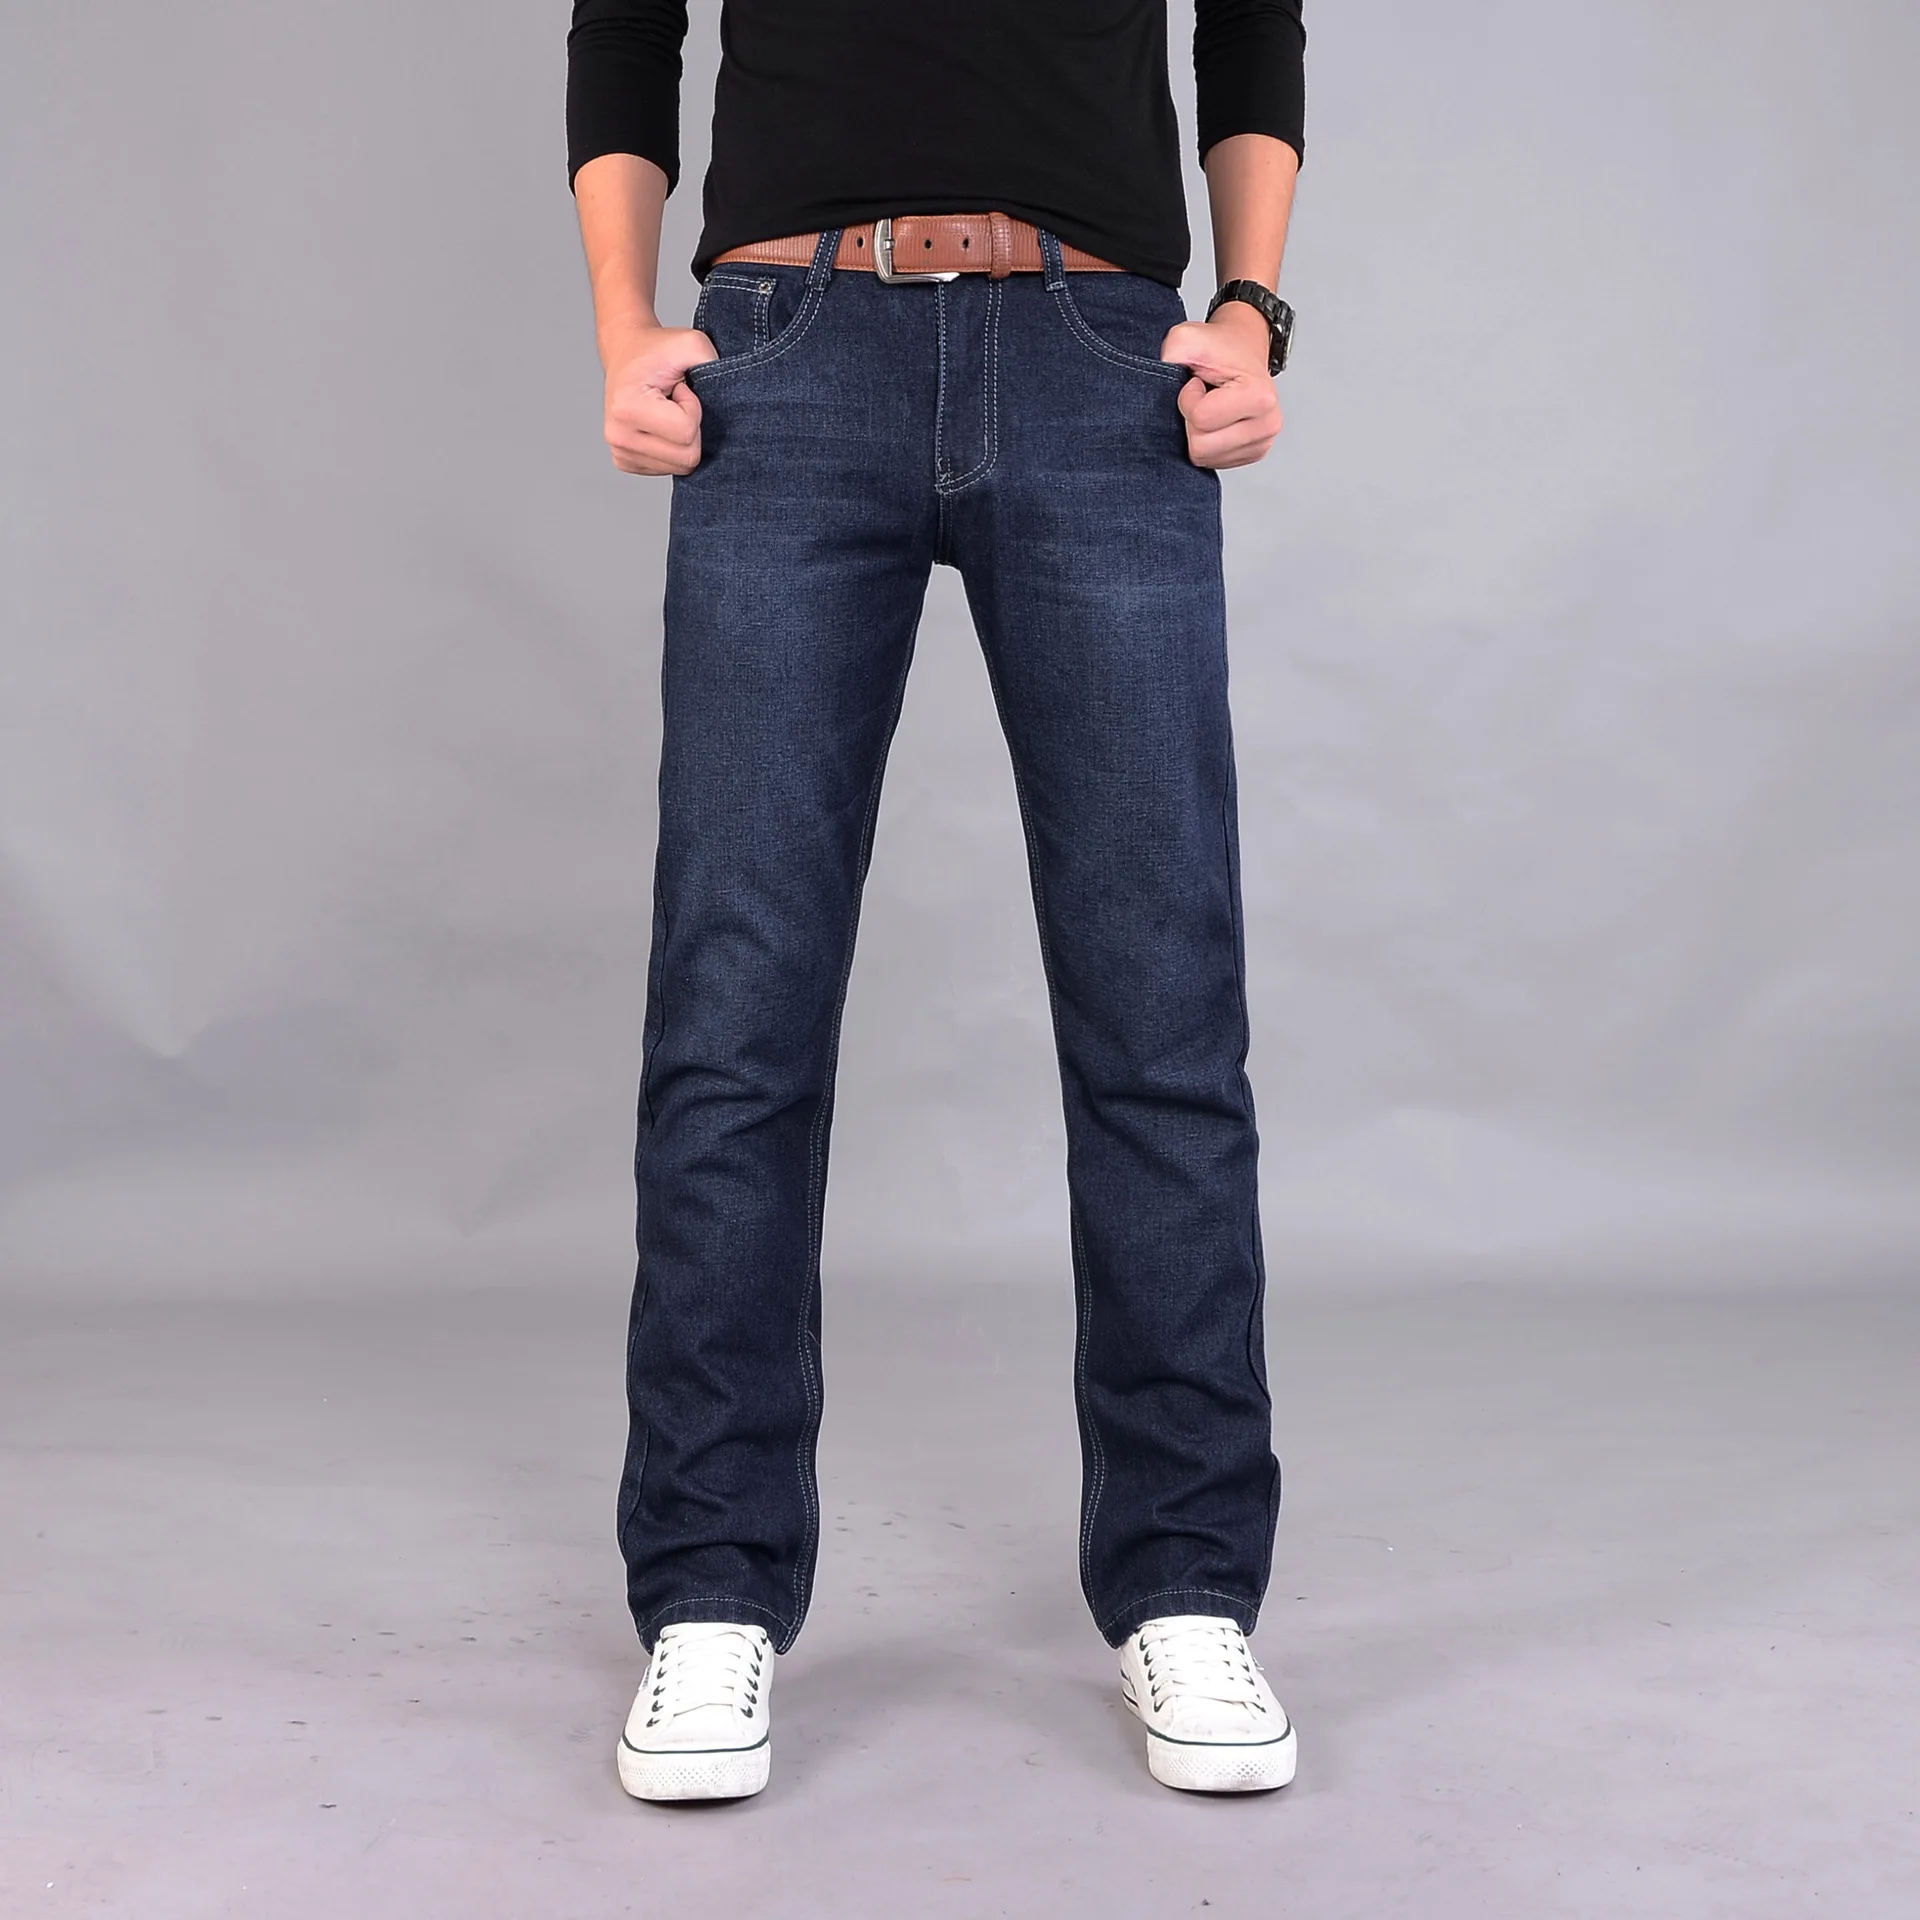 501 Для мужчин одежда записная книжка С ПЕРЕПЛЕТОМ с брюки средней посадки Мода в Корейском стиле Модные подростковые джинсы прямого покроя средней талией джинсы Для Мужчин 'S